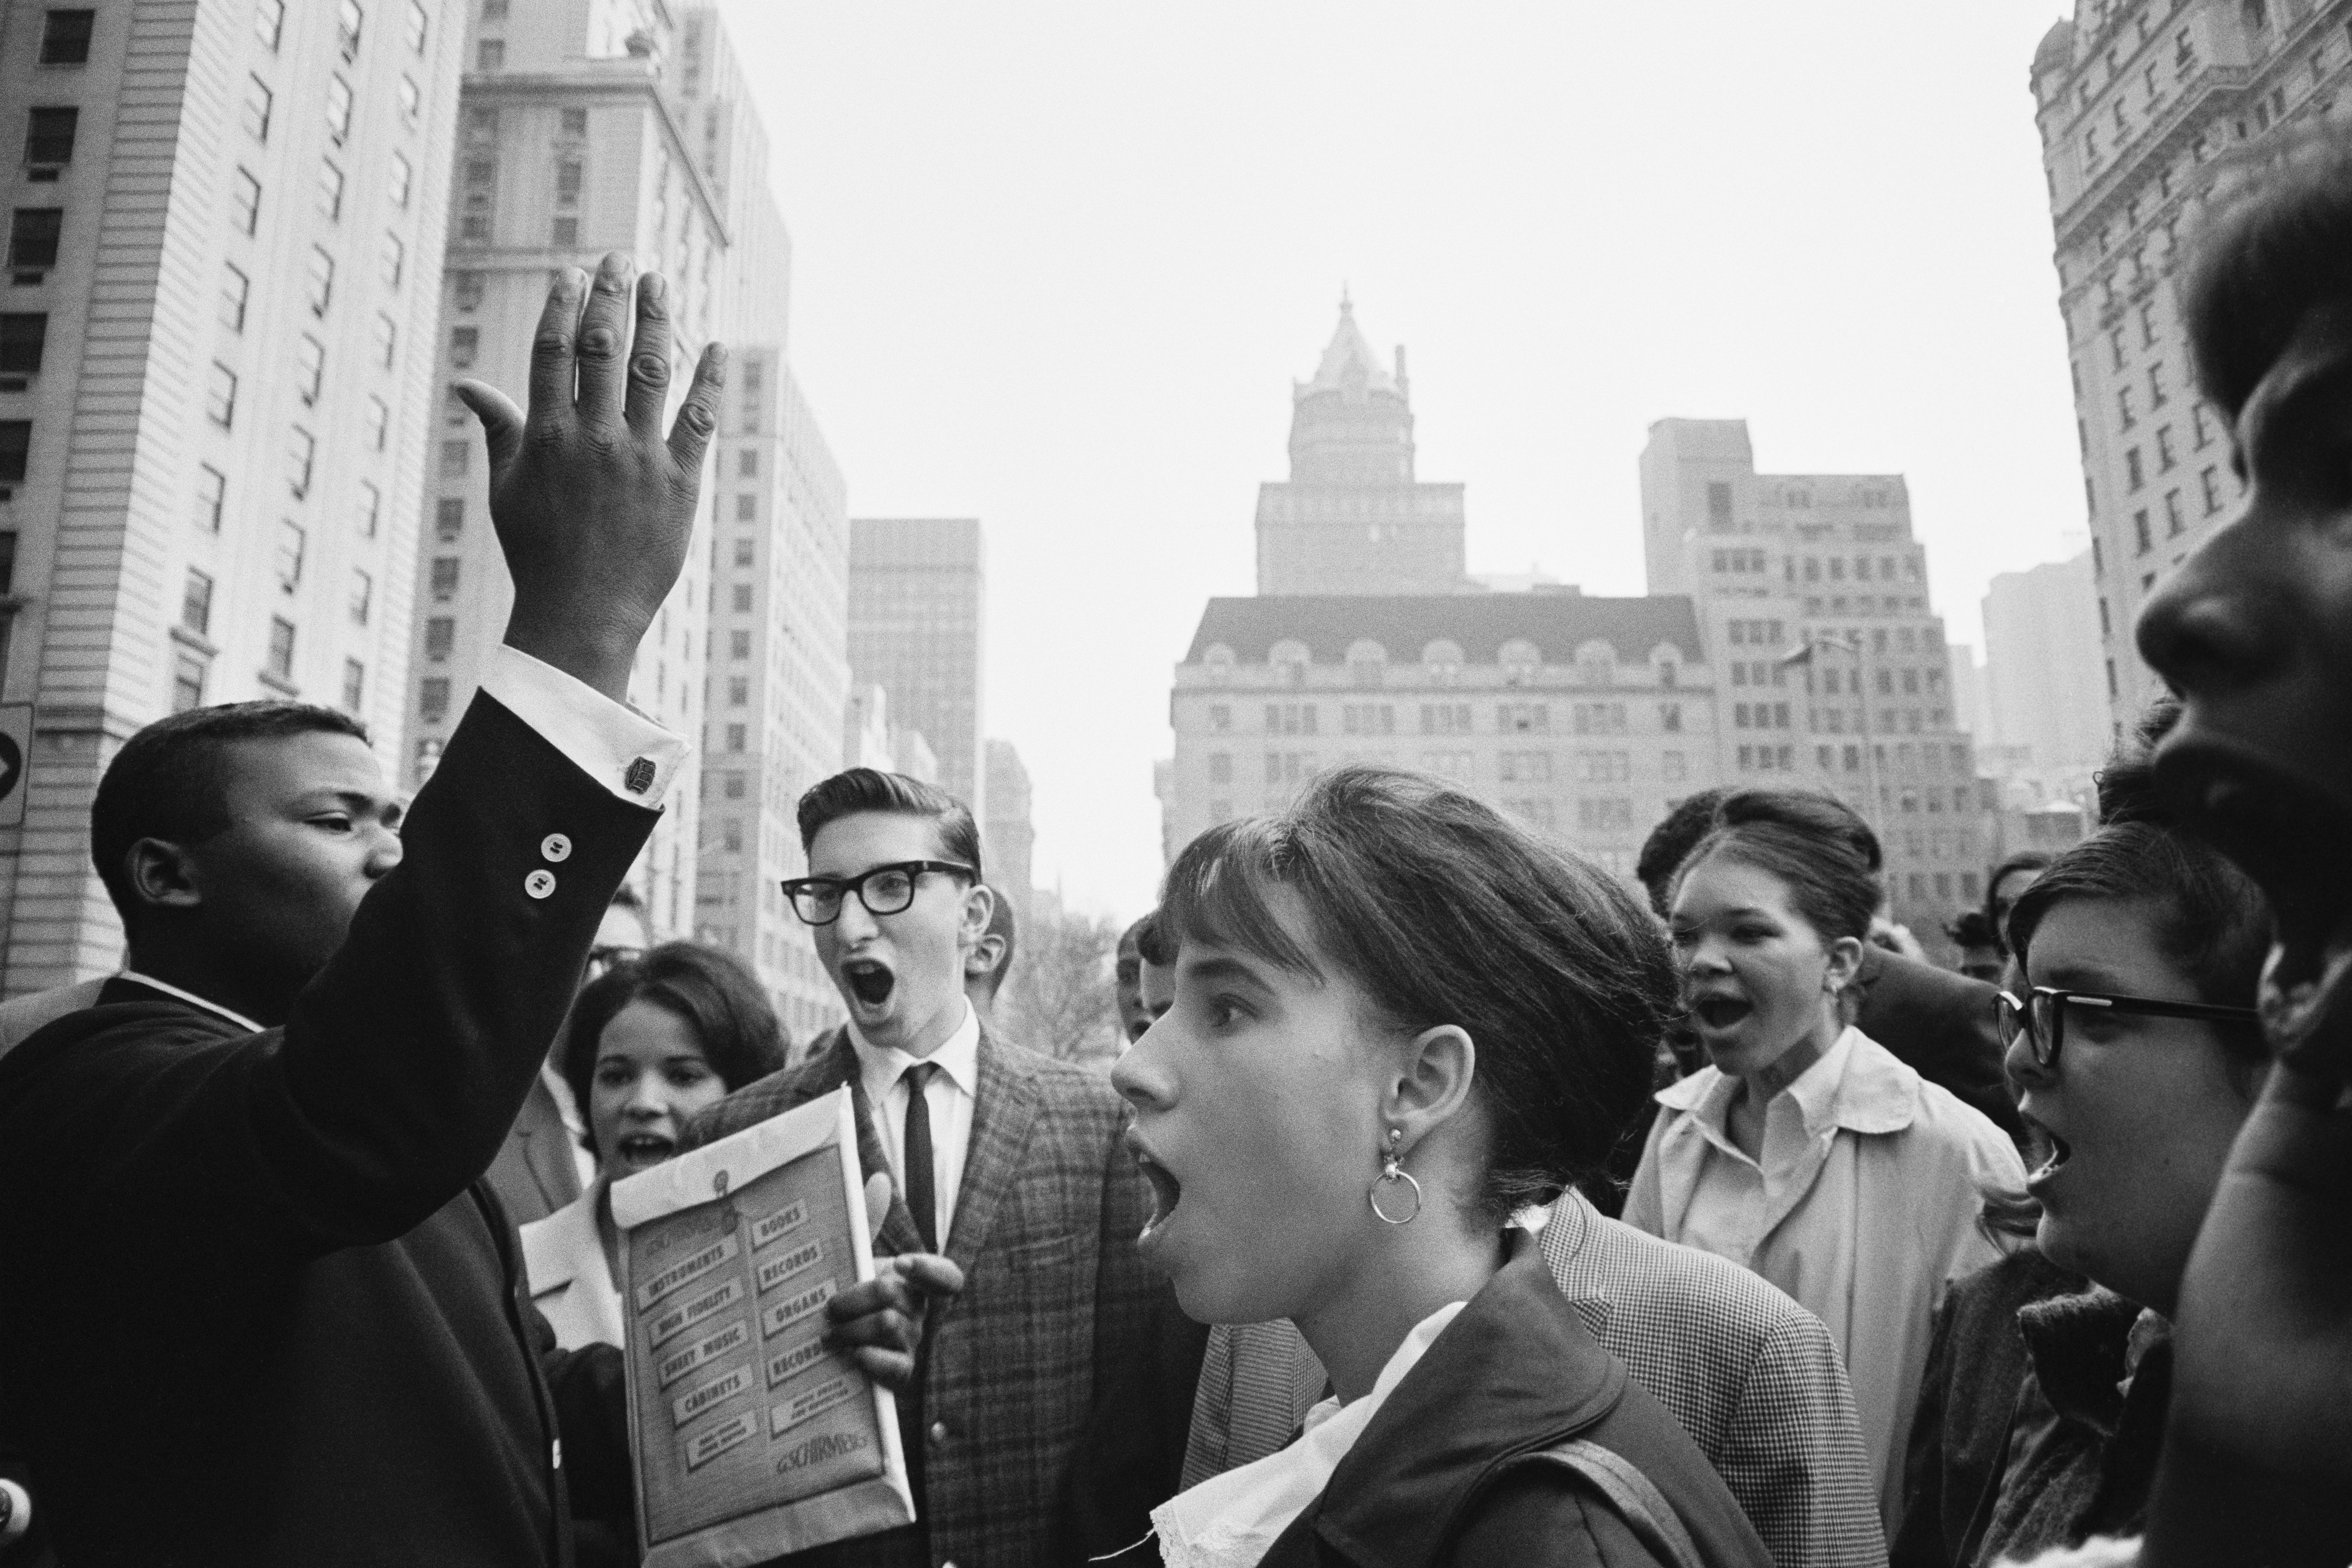 USA. NYC. 1964. Anti-Vietnam War gathering.